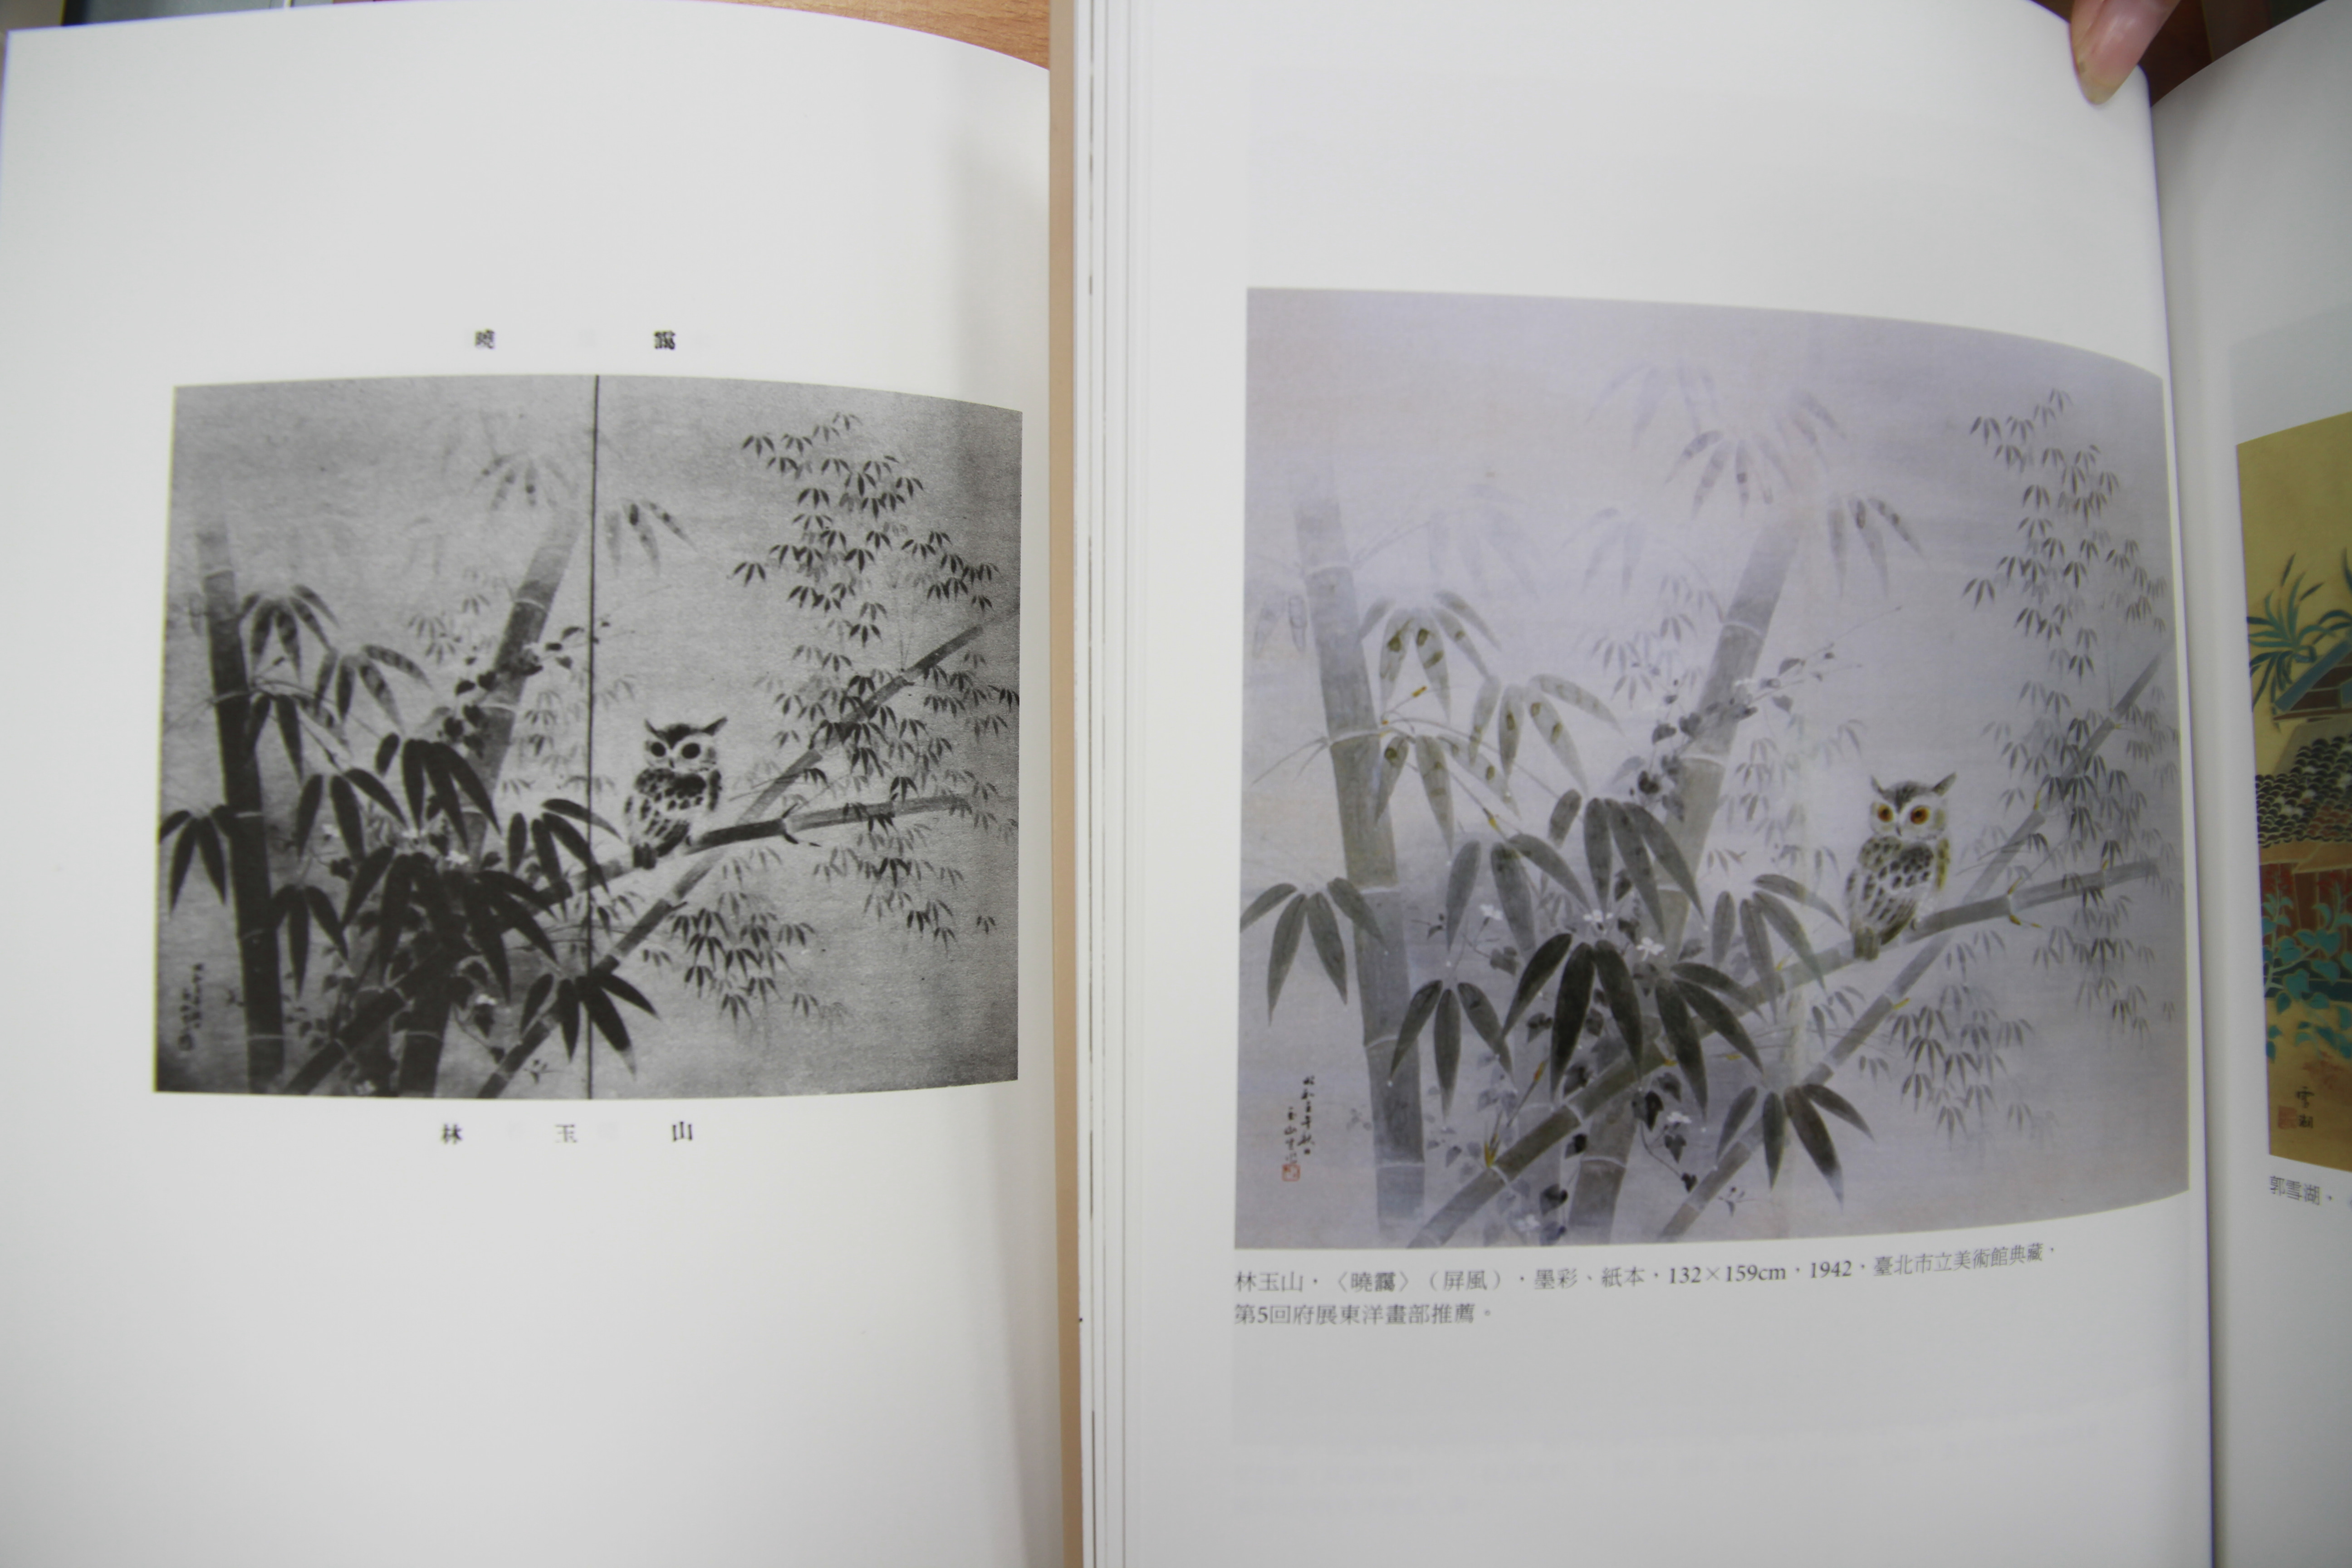 林玉山〈曉靄〉，第五回府展圖錄復刻與《別冊》彩頁對照